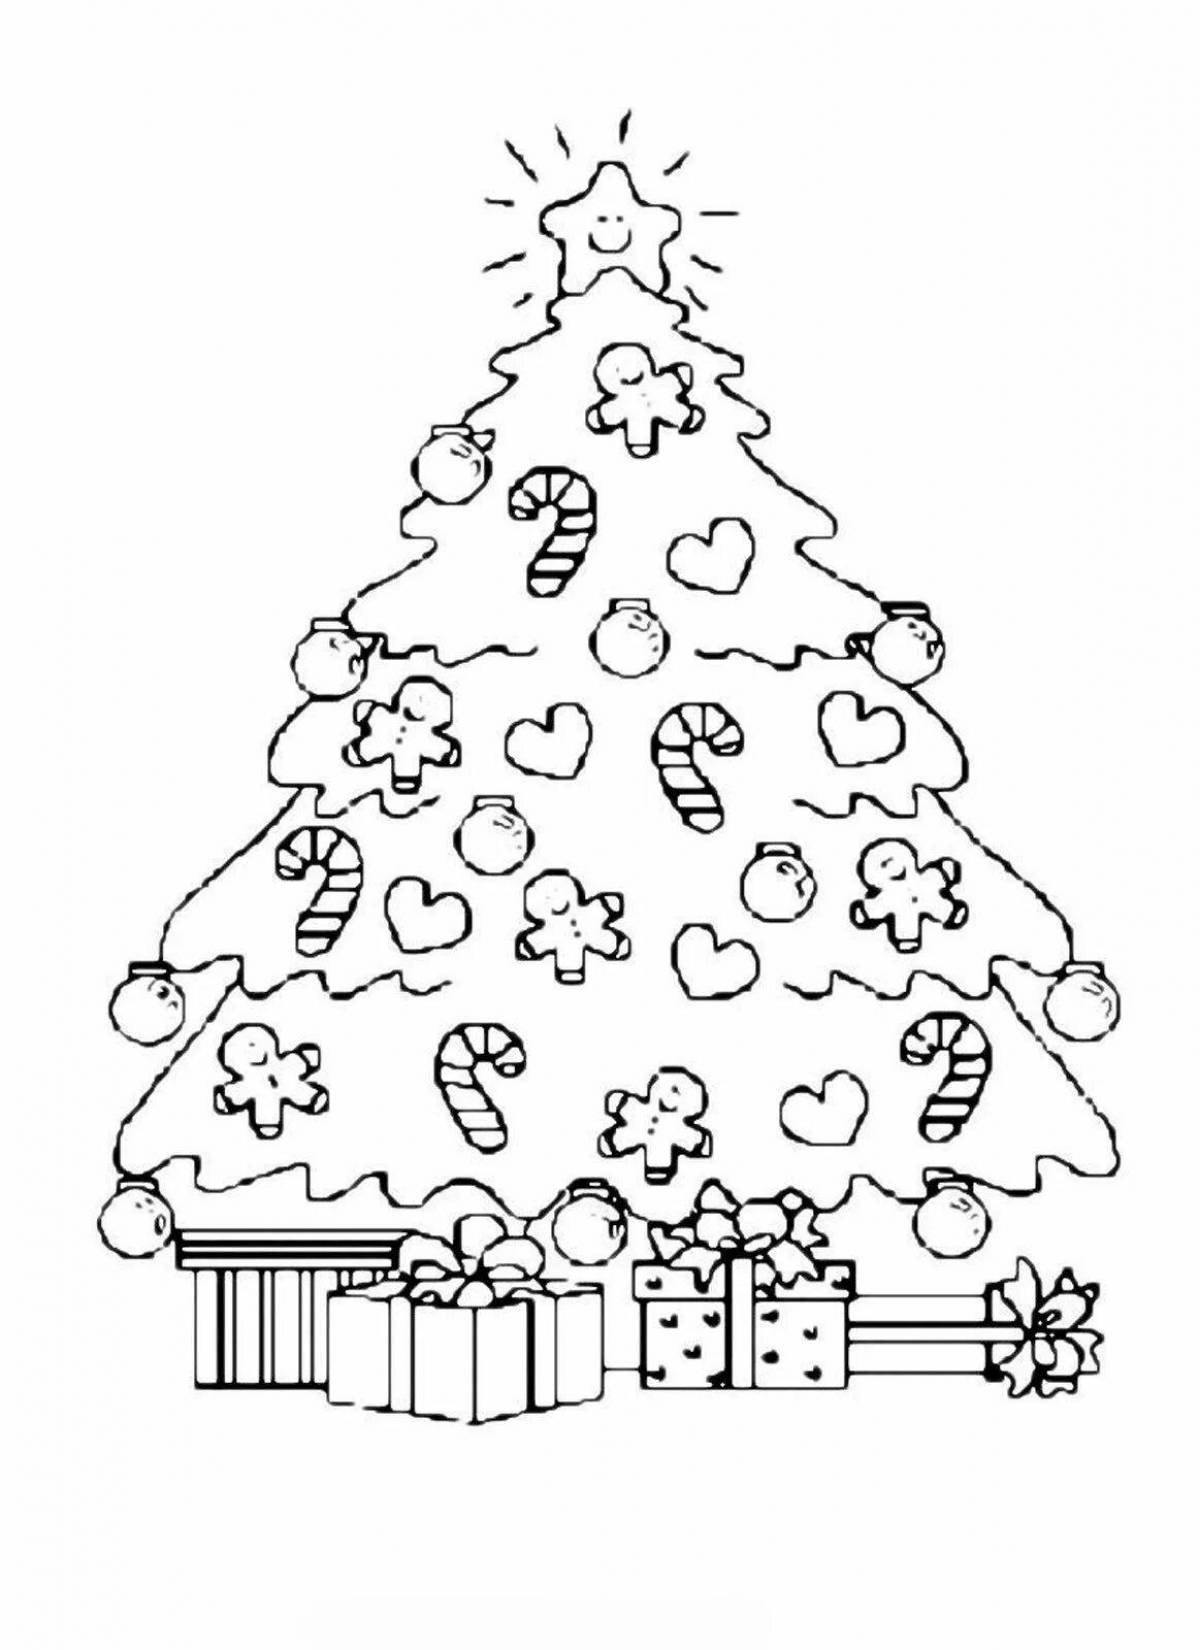 Украшенная раскраска рождественская елка с шарами